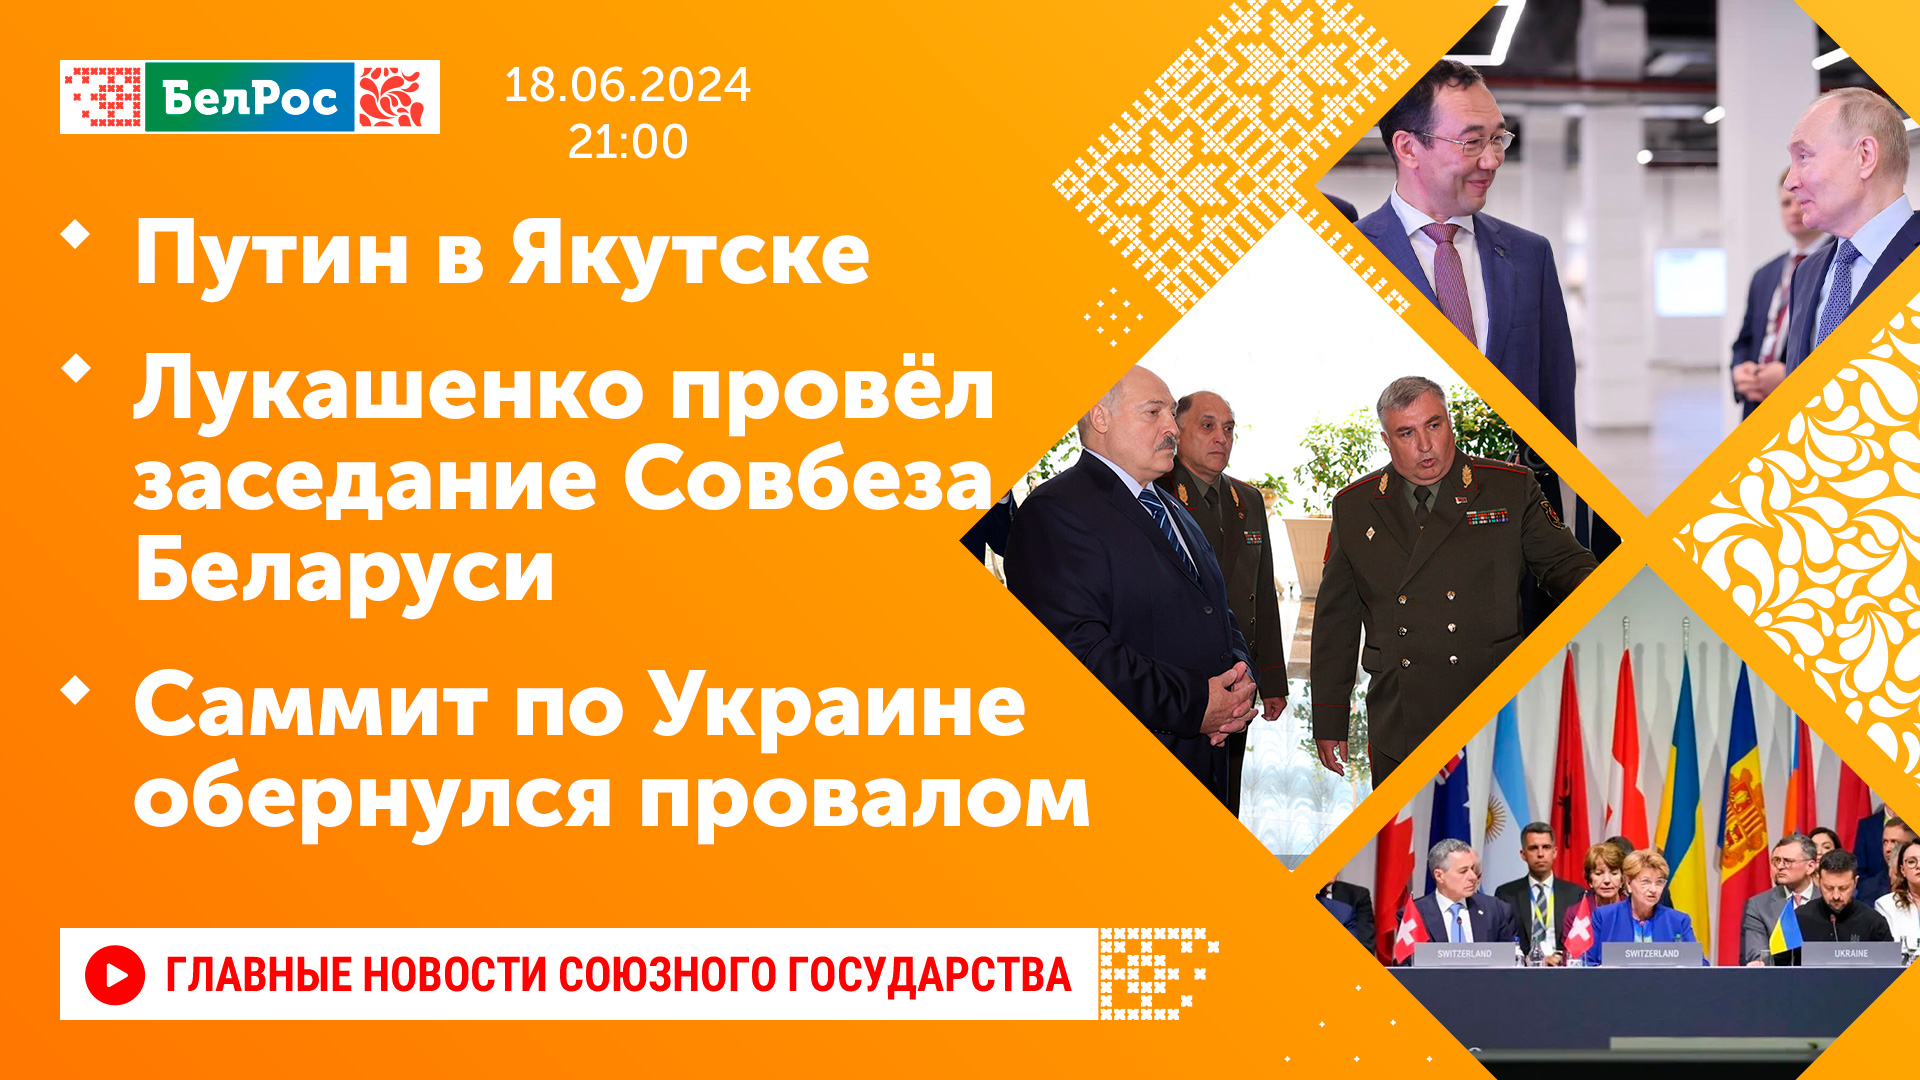 Путин в Якутске / Лукашенко провёл заседание Совбеза Беларуси /Саммит по Украине обернулся провалом